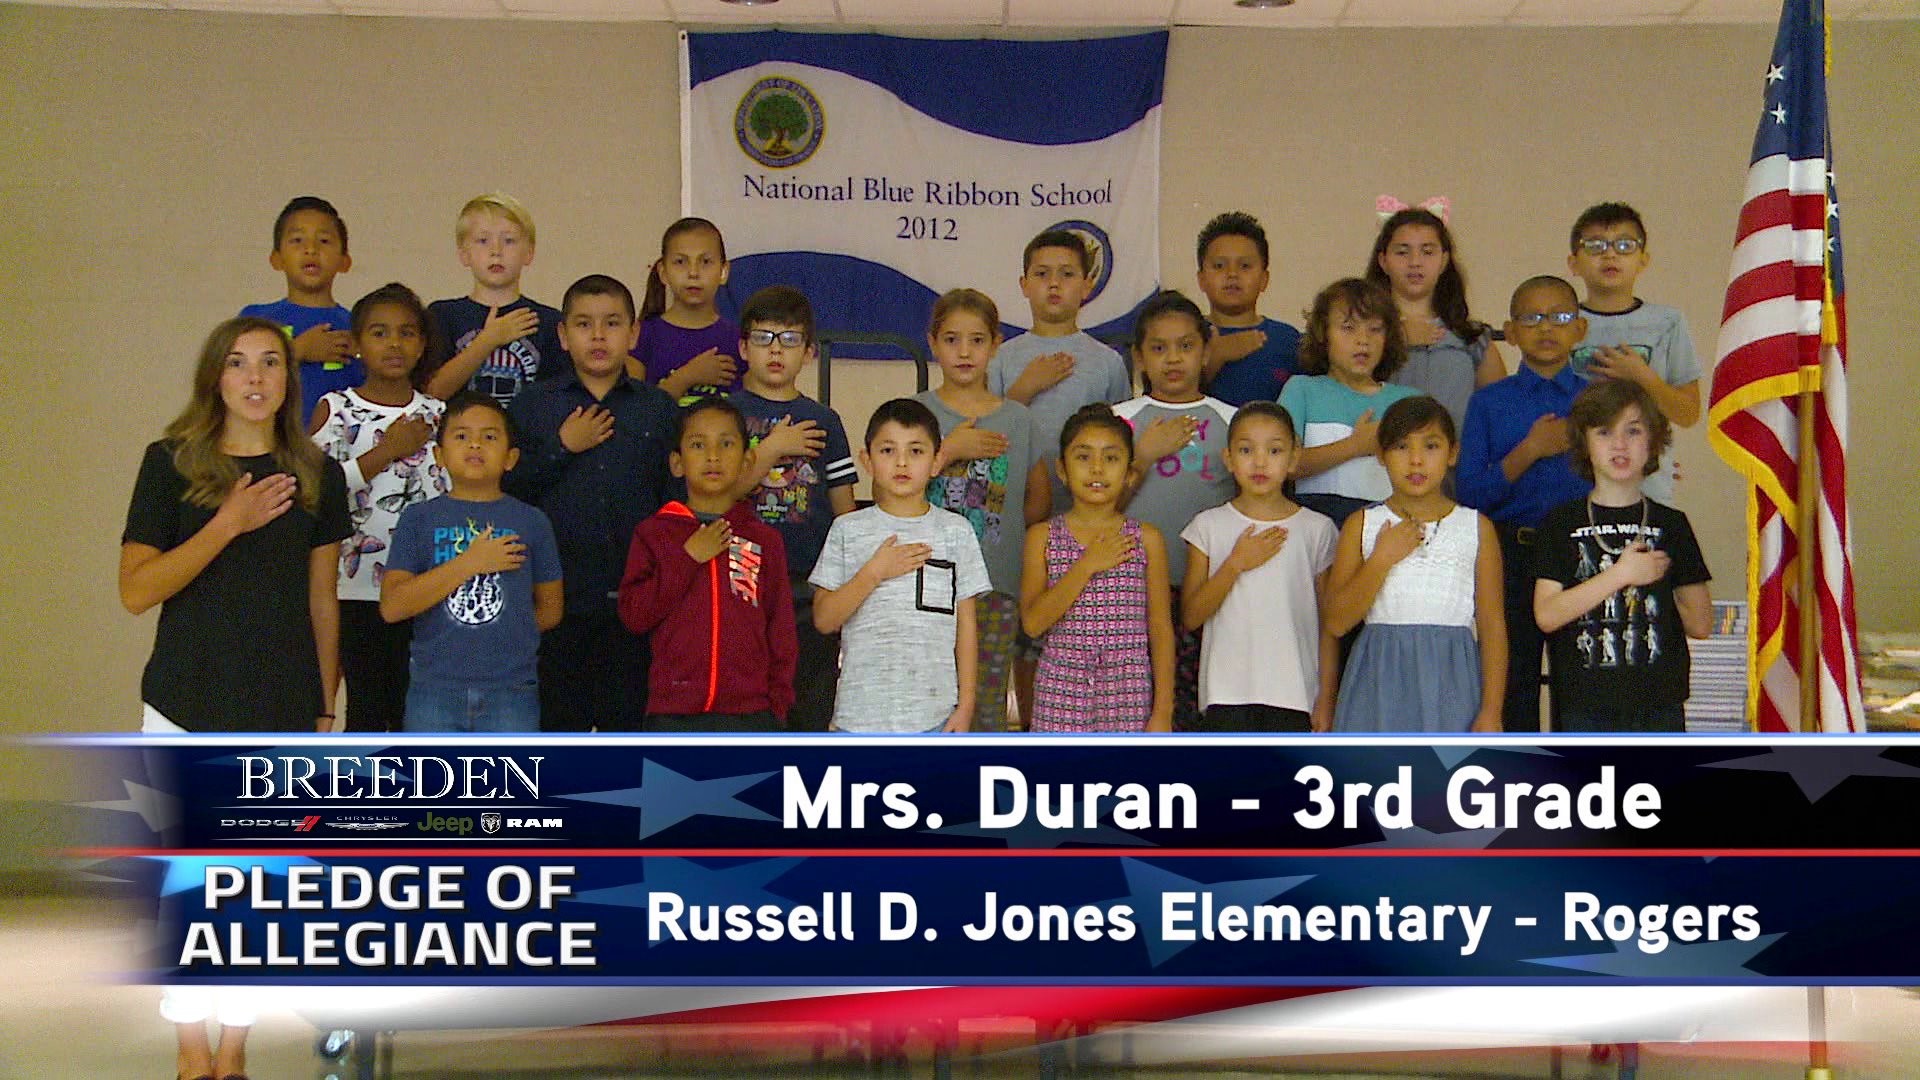 Mrs. Duran  3rd Grade Russell D. Jones Elementary